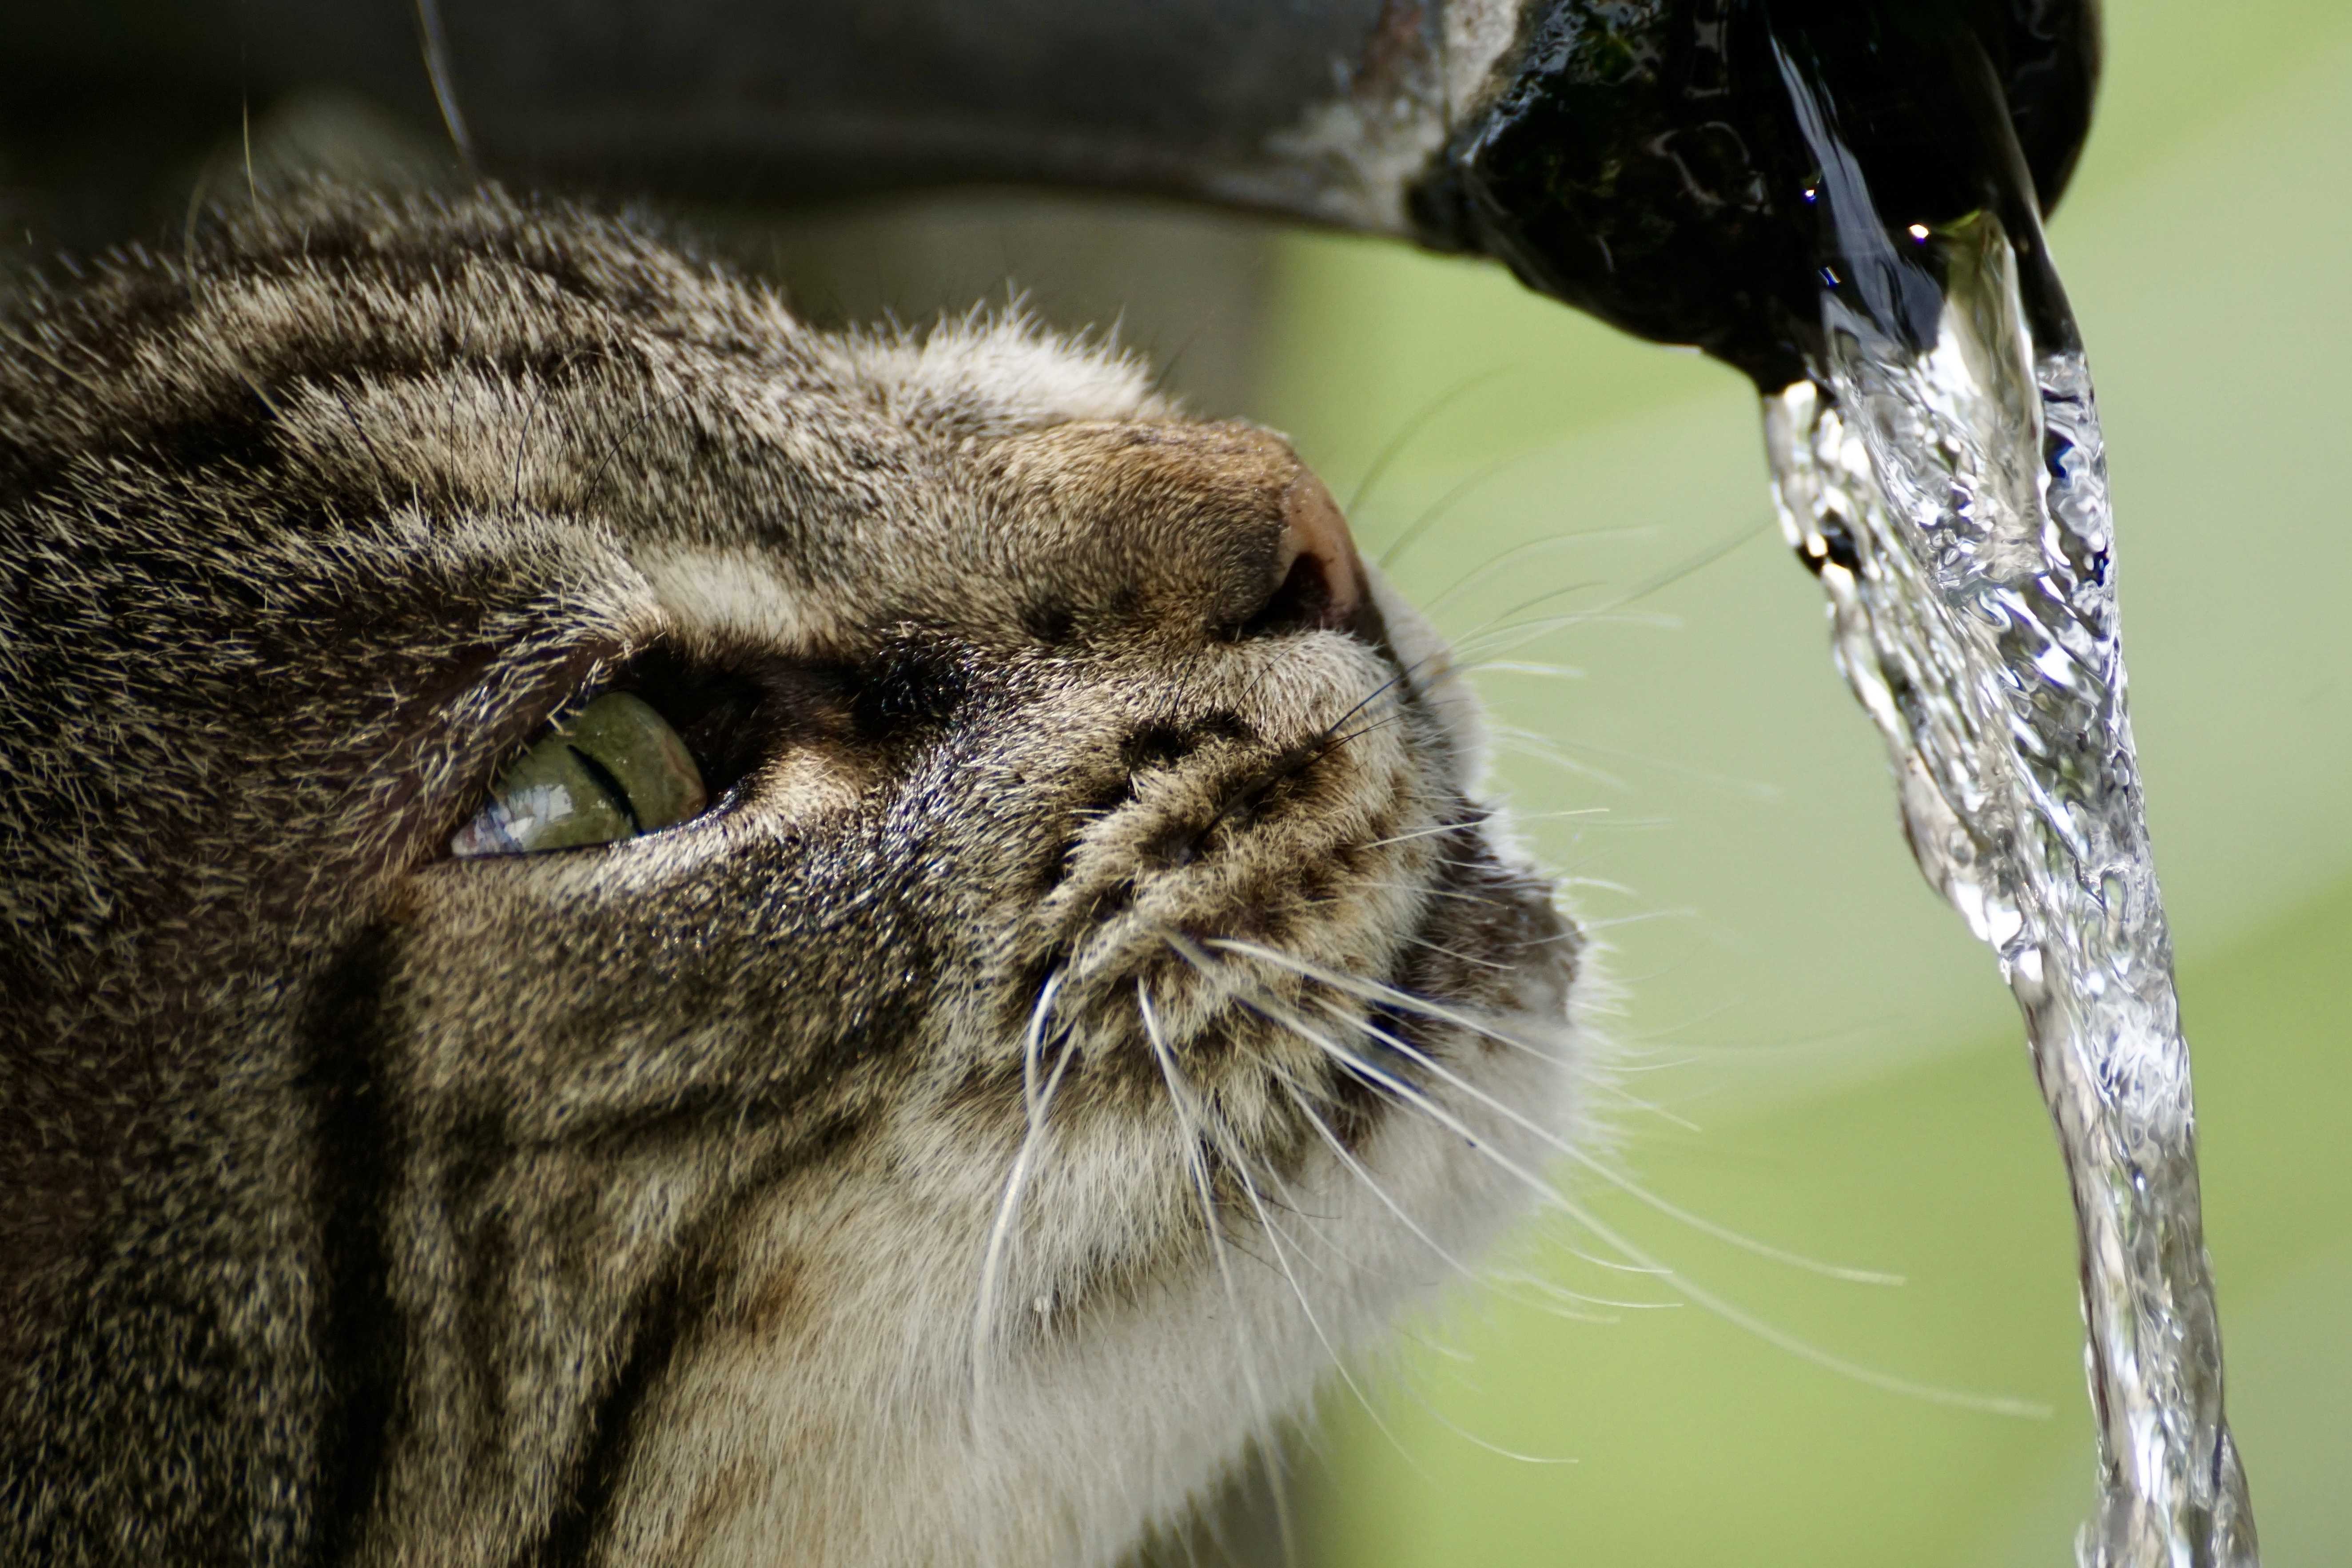 水を飲むのが下手な猫がいる⁉水飲み下手な猫に上手に水分を摂らせてあげるコツとは